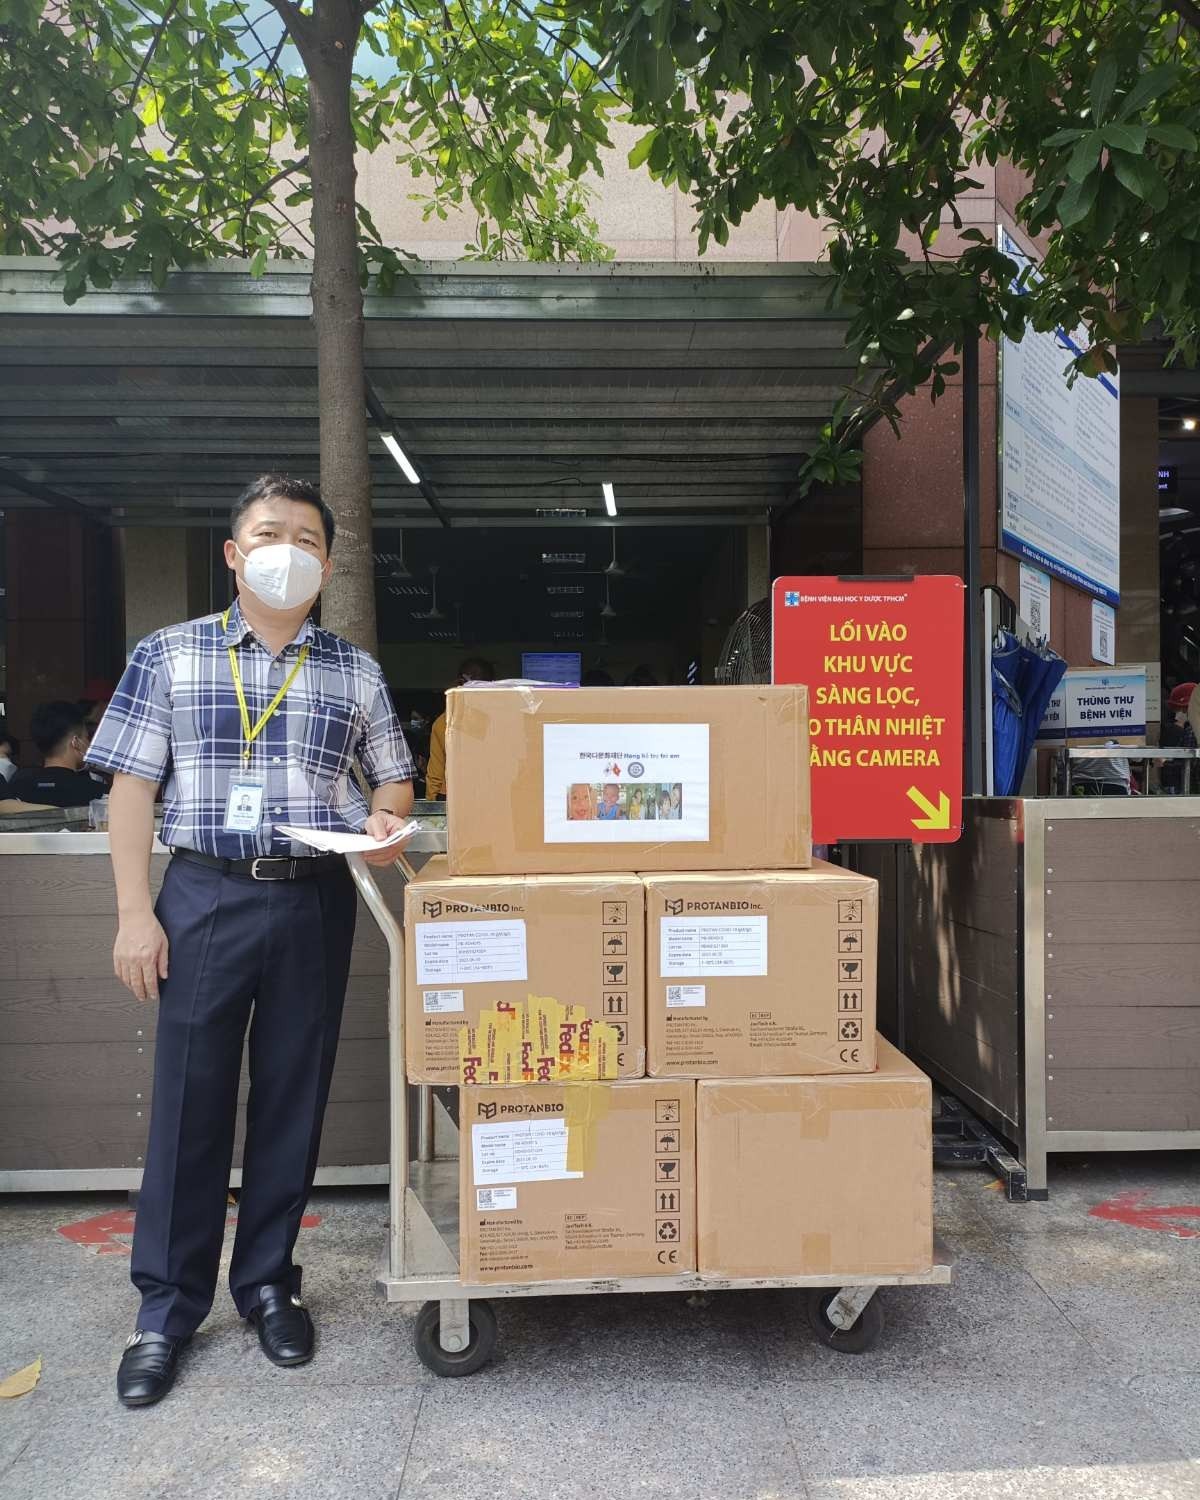 Thông qua sự giúp đỡ của ông Đinh Quang Hiền - Chủ tịch S Group, ngày 8/4 đã chuyển 5.000 kit test đầu tiên tới Bệnh viện Đại học Y dược thành phố Hồ Chí Minh